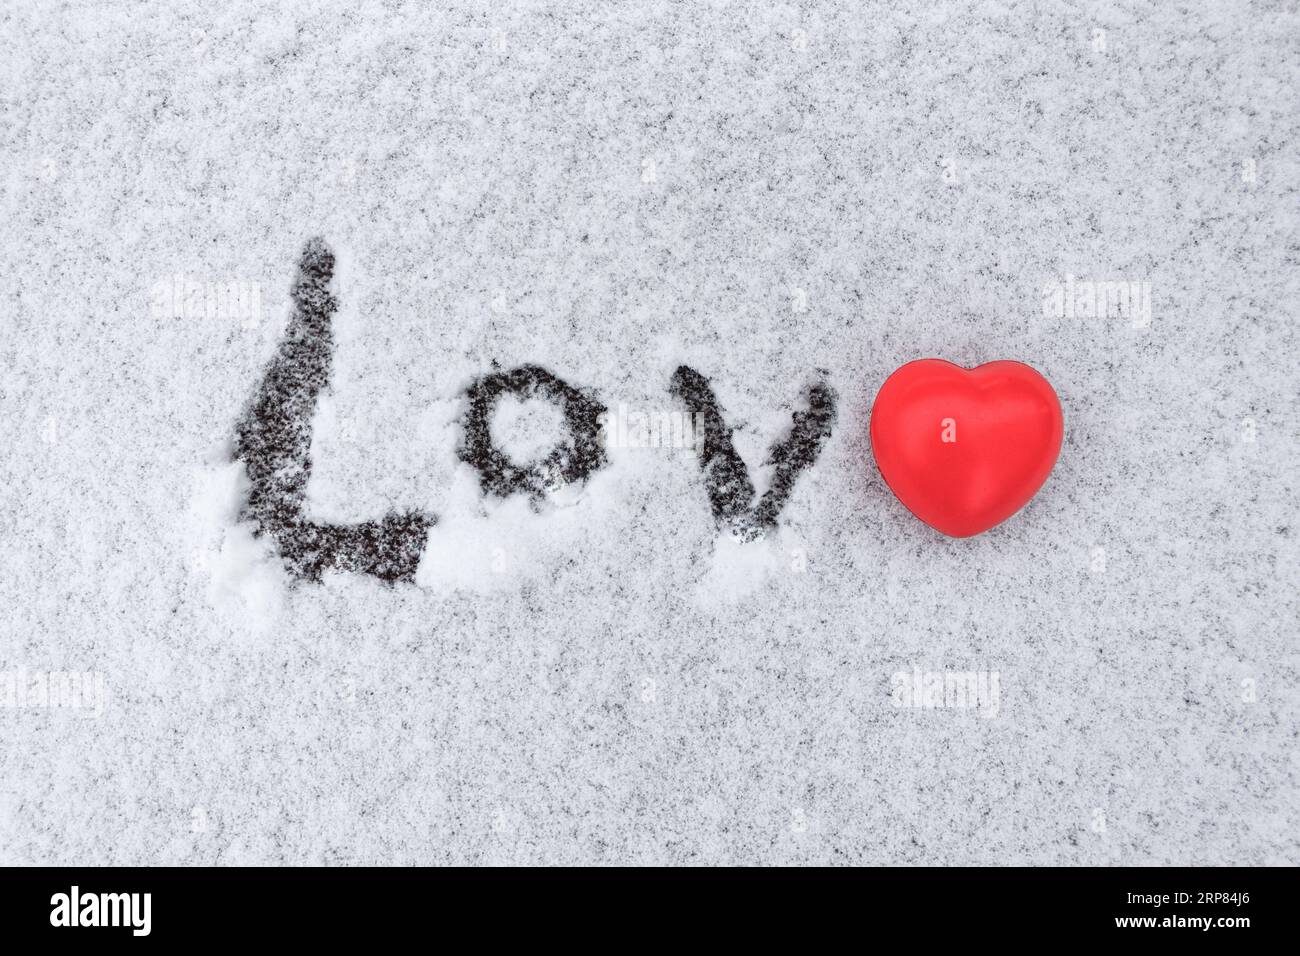 Das Wort Liebe, das im Schnee geschrieben wurde, mit einer roten Herzfigur anstelle des Buchstabens E Stockfoto